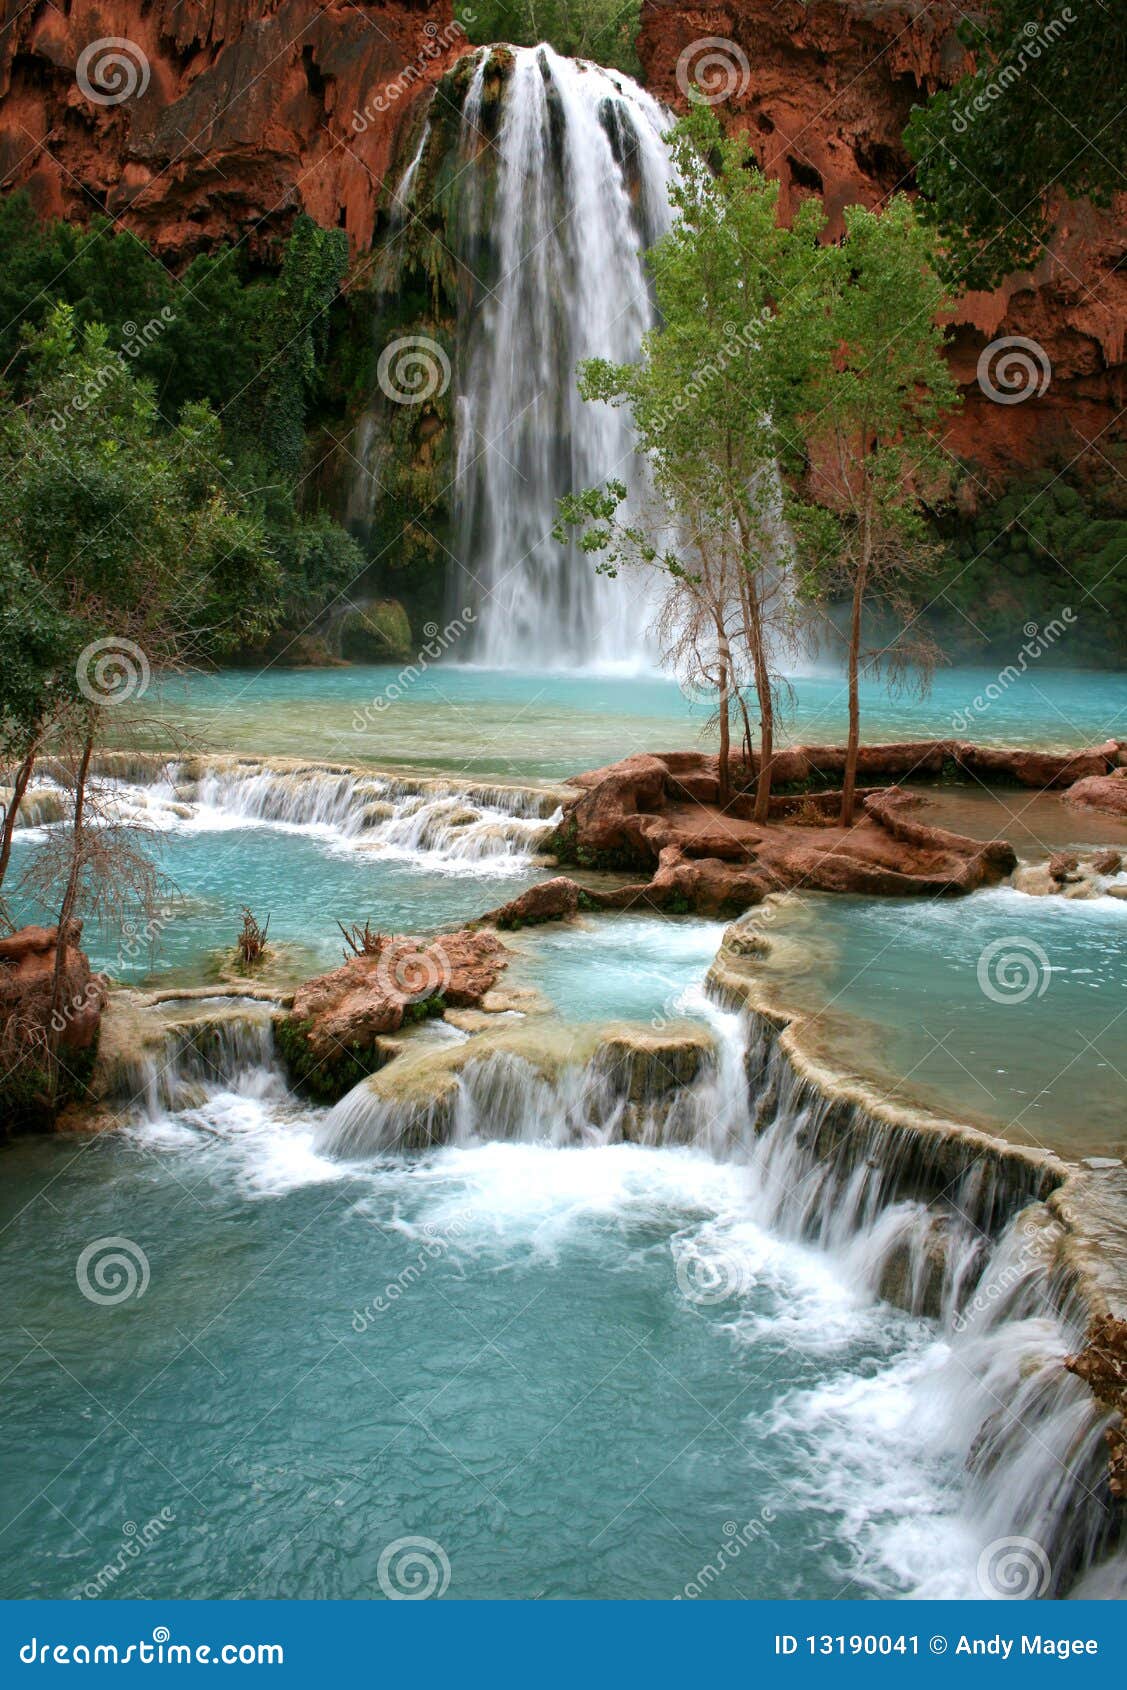 havasu falls waterfall